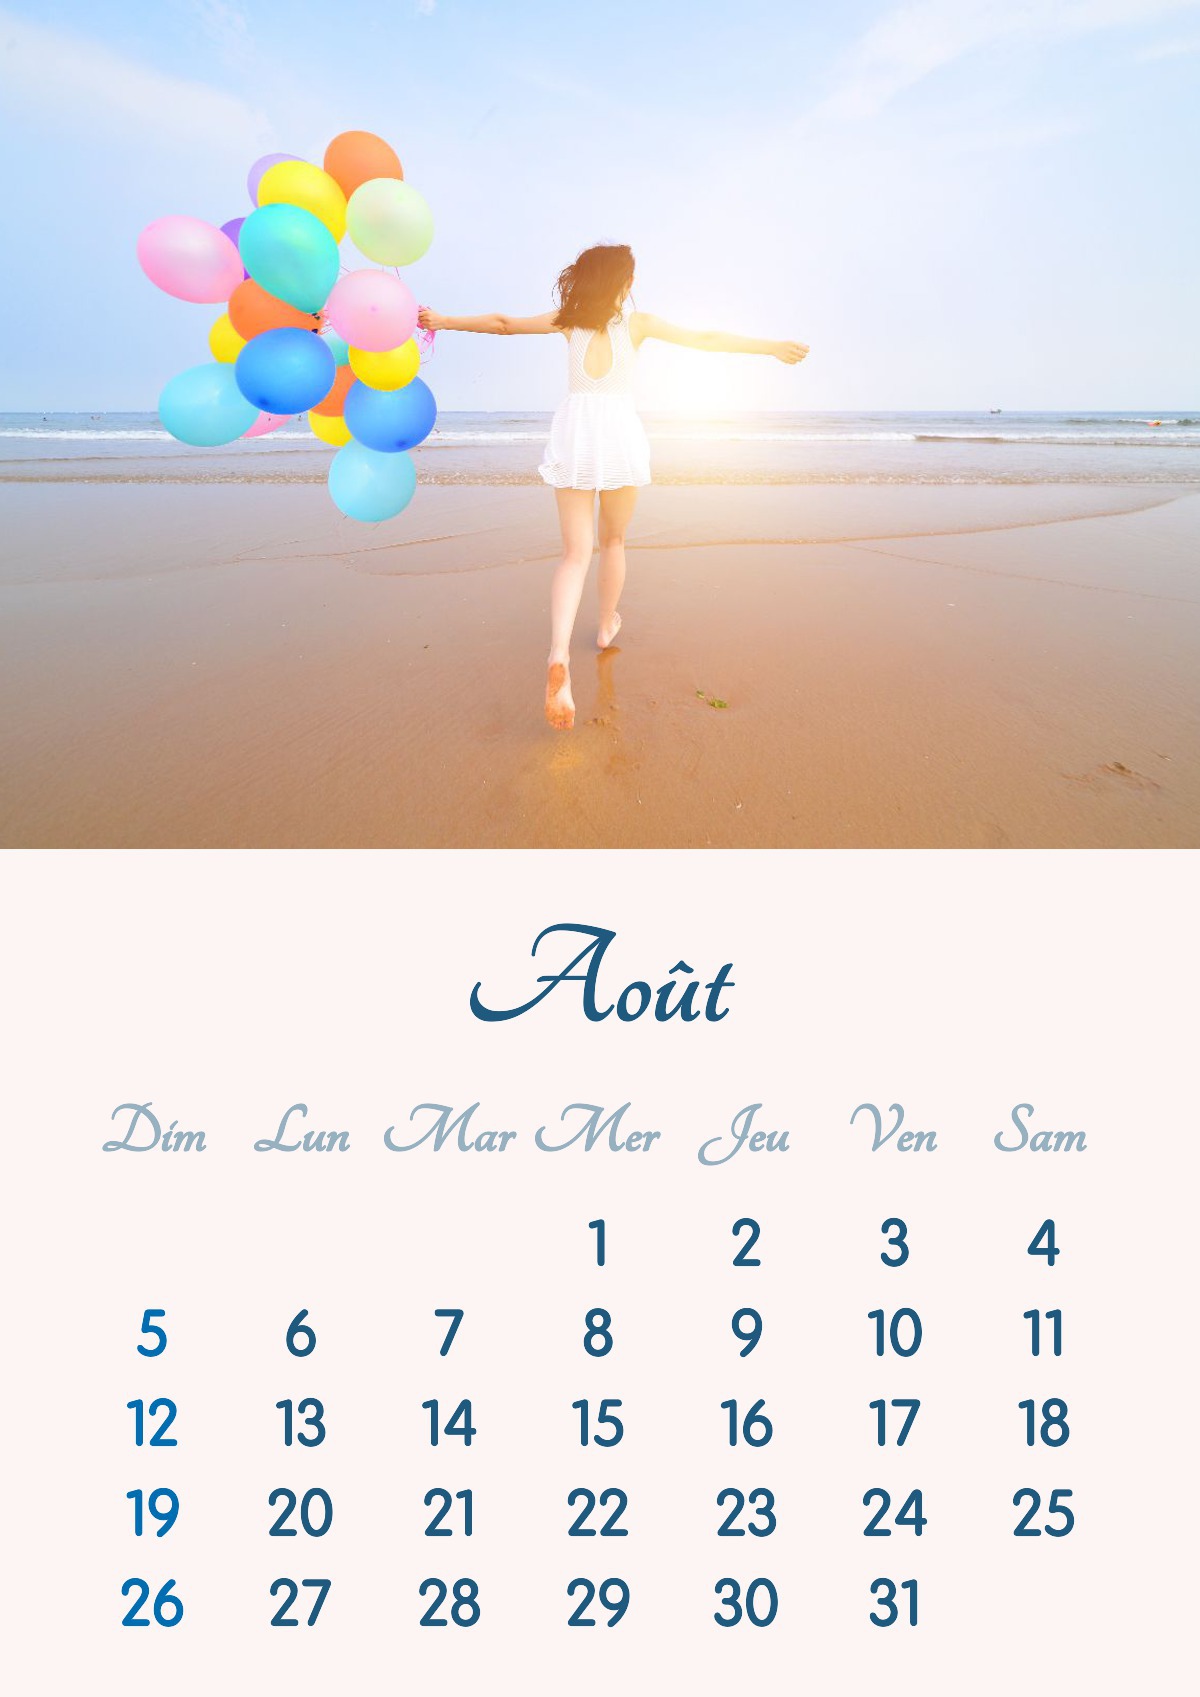 Kalenderen for august 2018 kan udskrives i A4-format Fotomontage